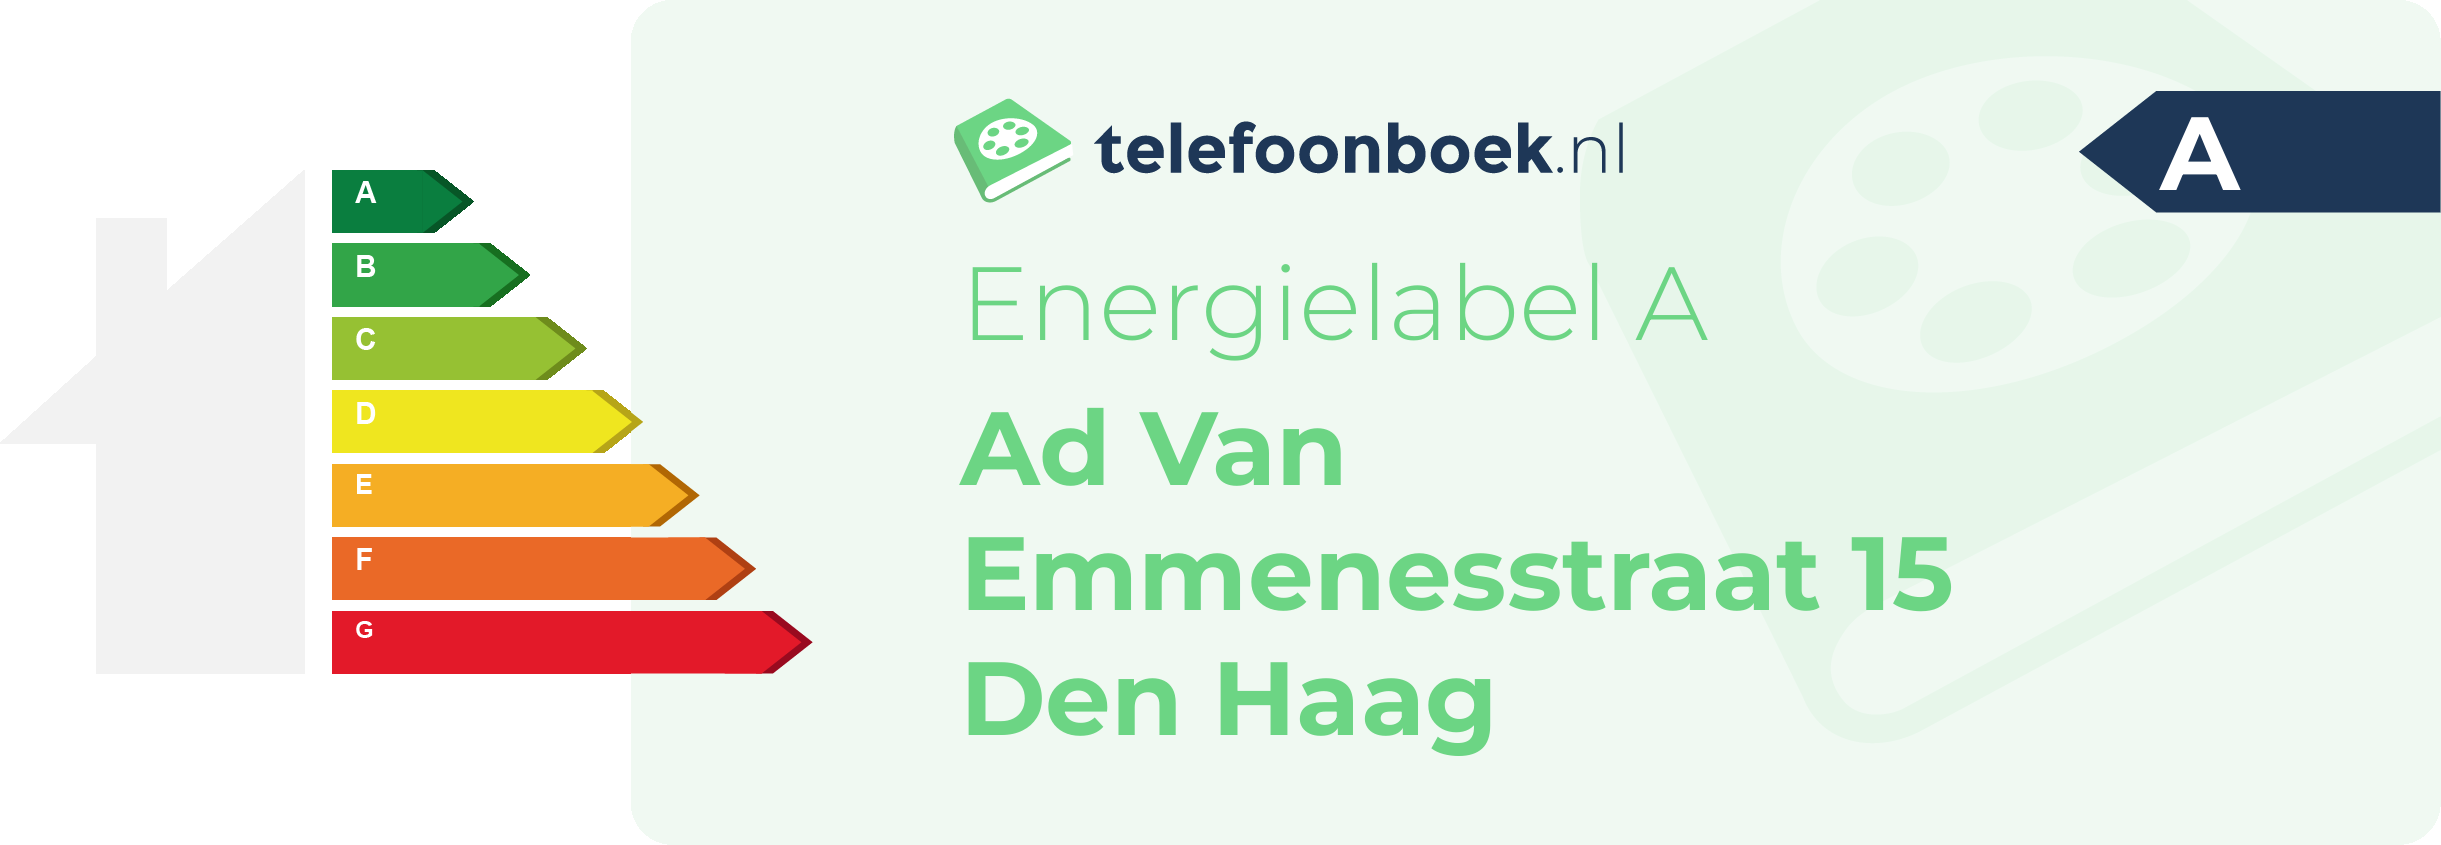 Energielabel Ad Van Emmenesstraat 15 Den Haag